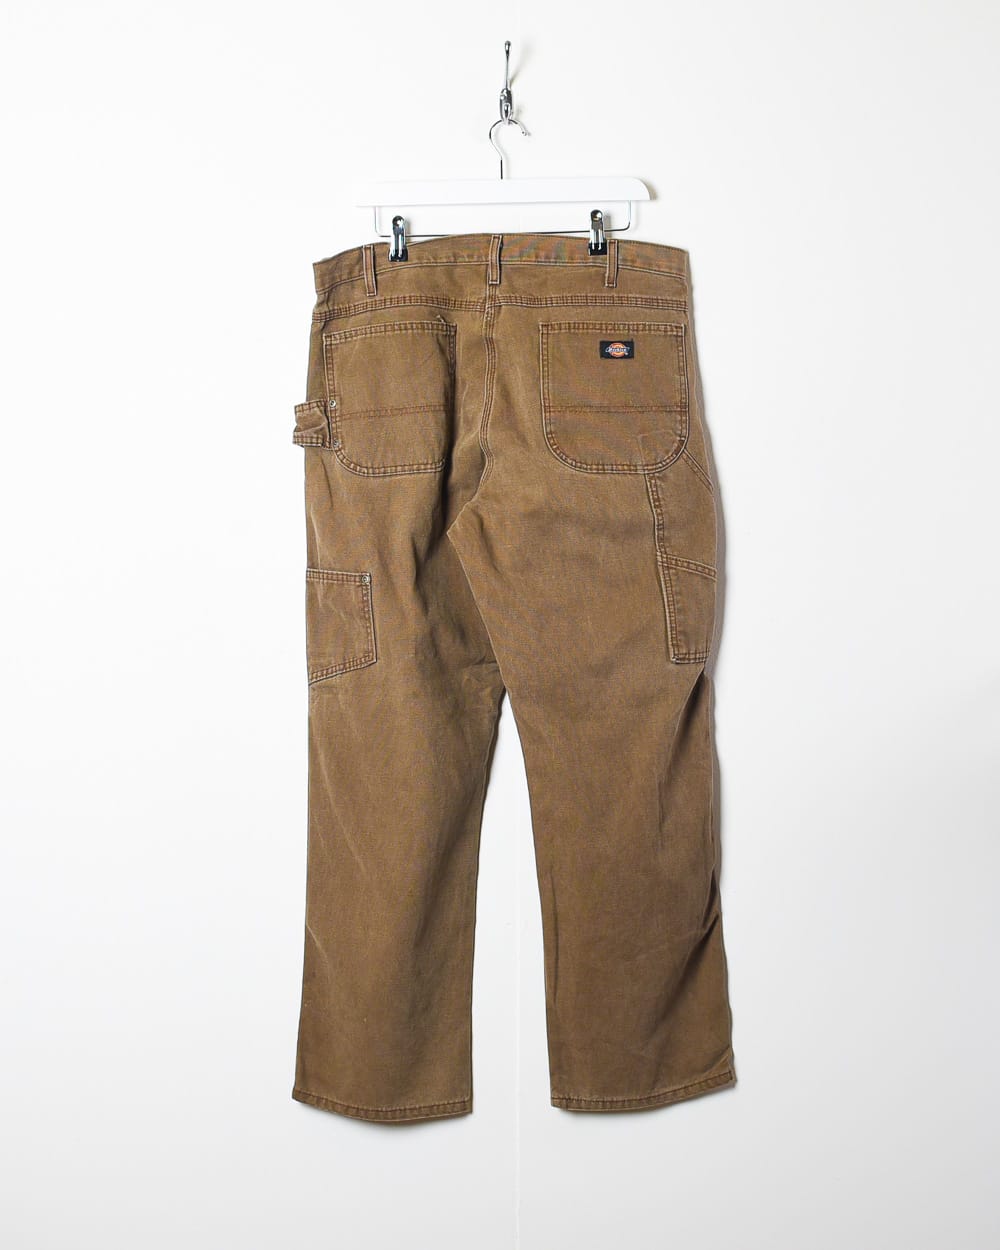 Brown Dickies Carpenter Jeans - W36 L32